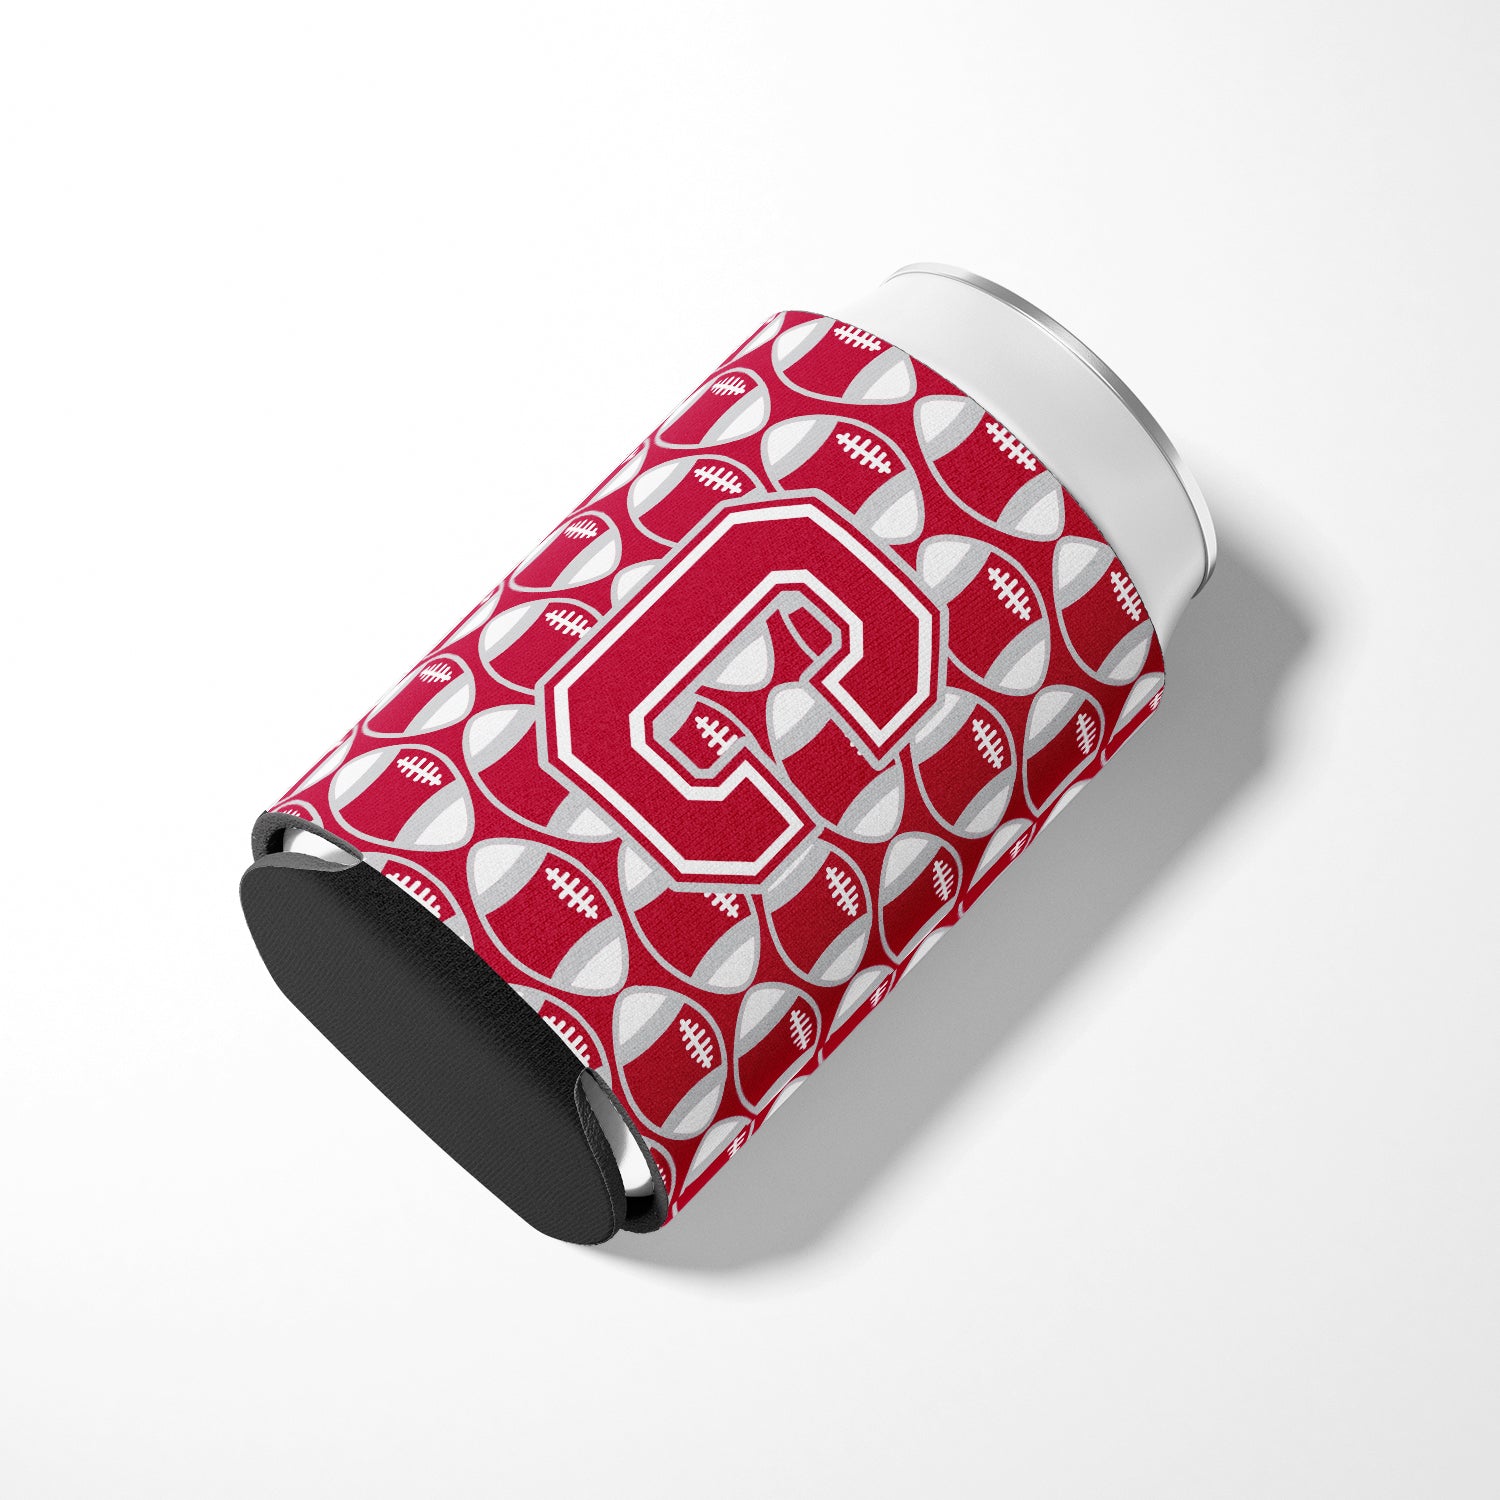 Letter C Football Crimson, grey and white Can or Bottle Hugger CJ1065-CCC.